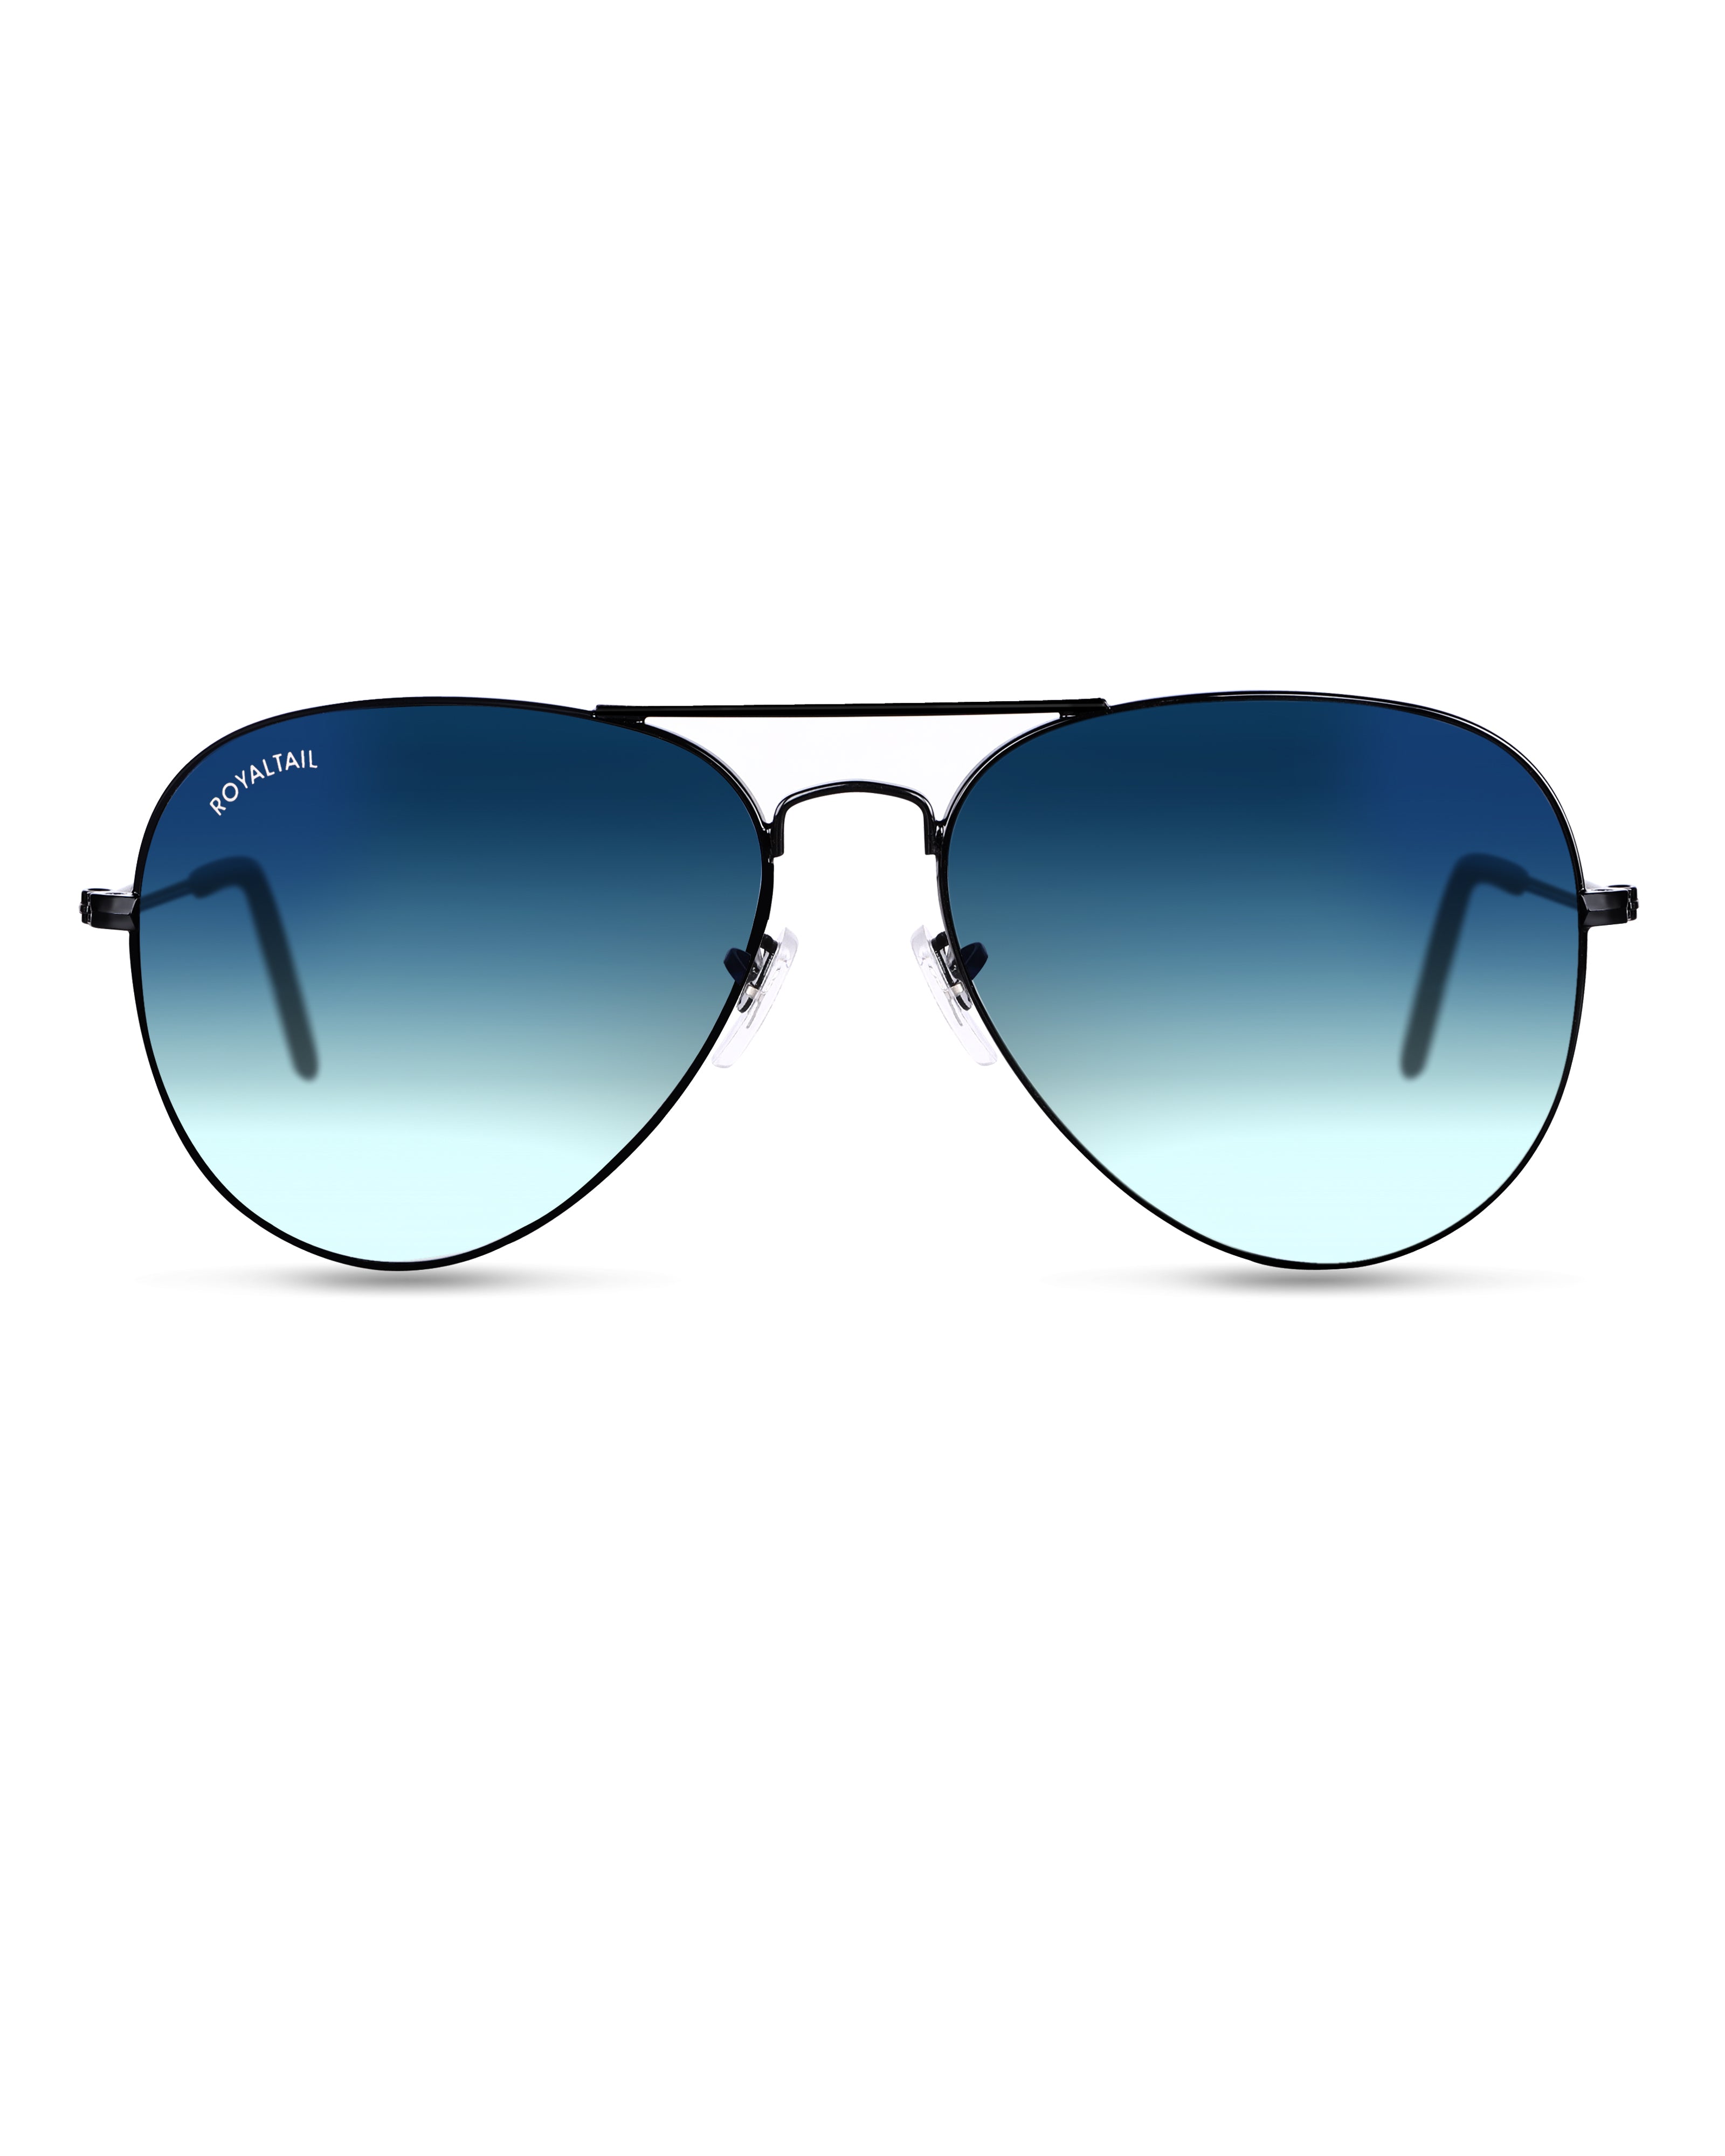 Can Sunglasses Help Filter Blue Light?